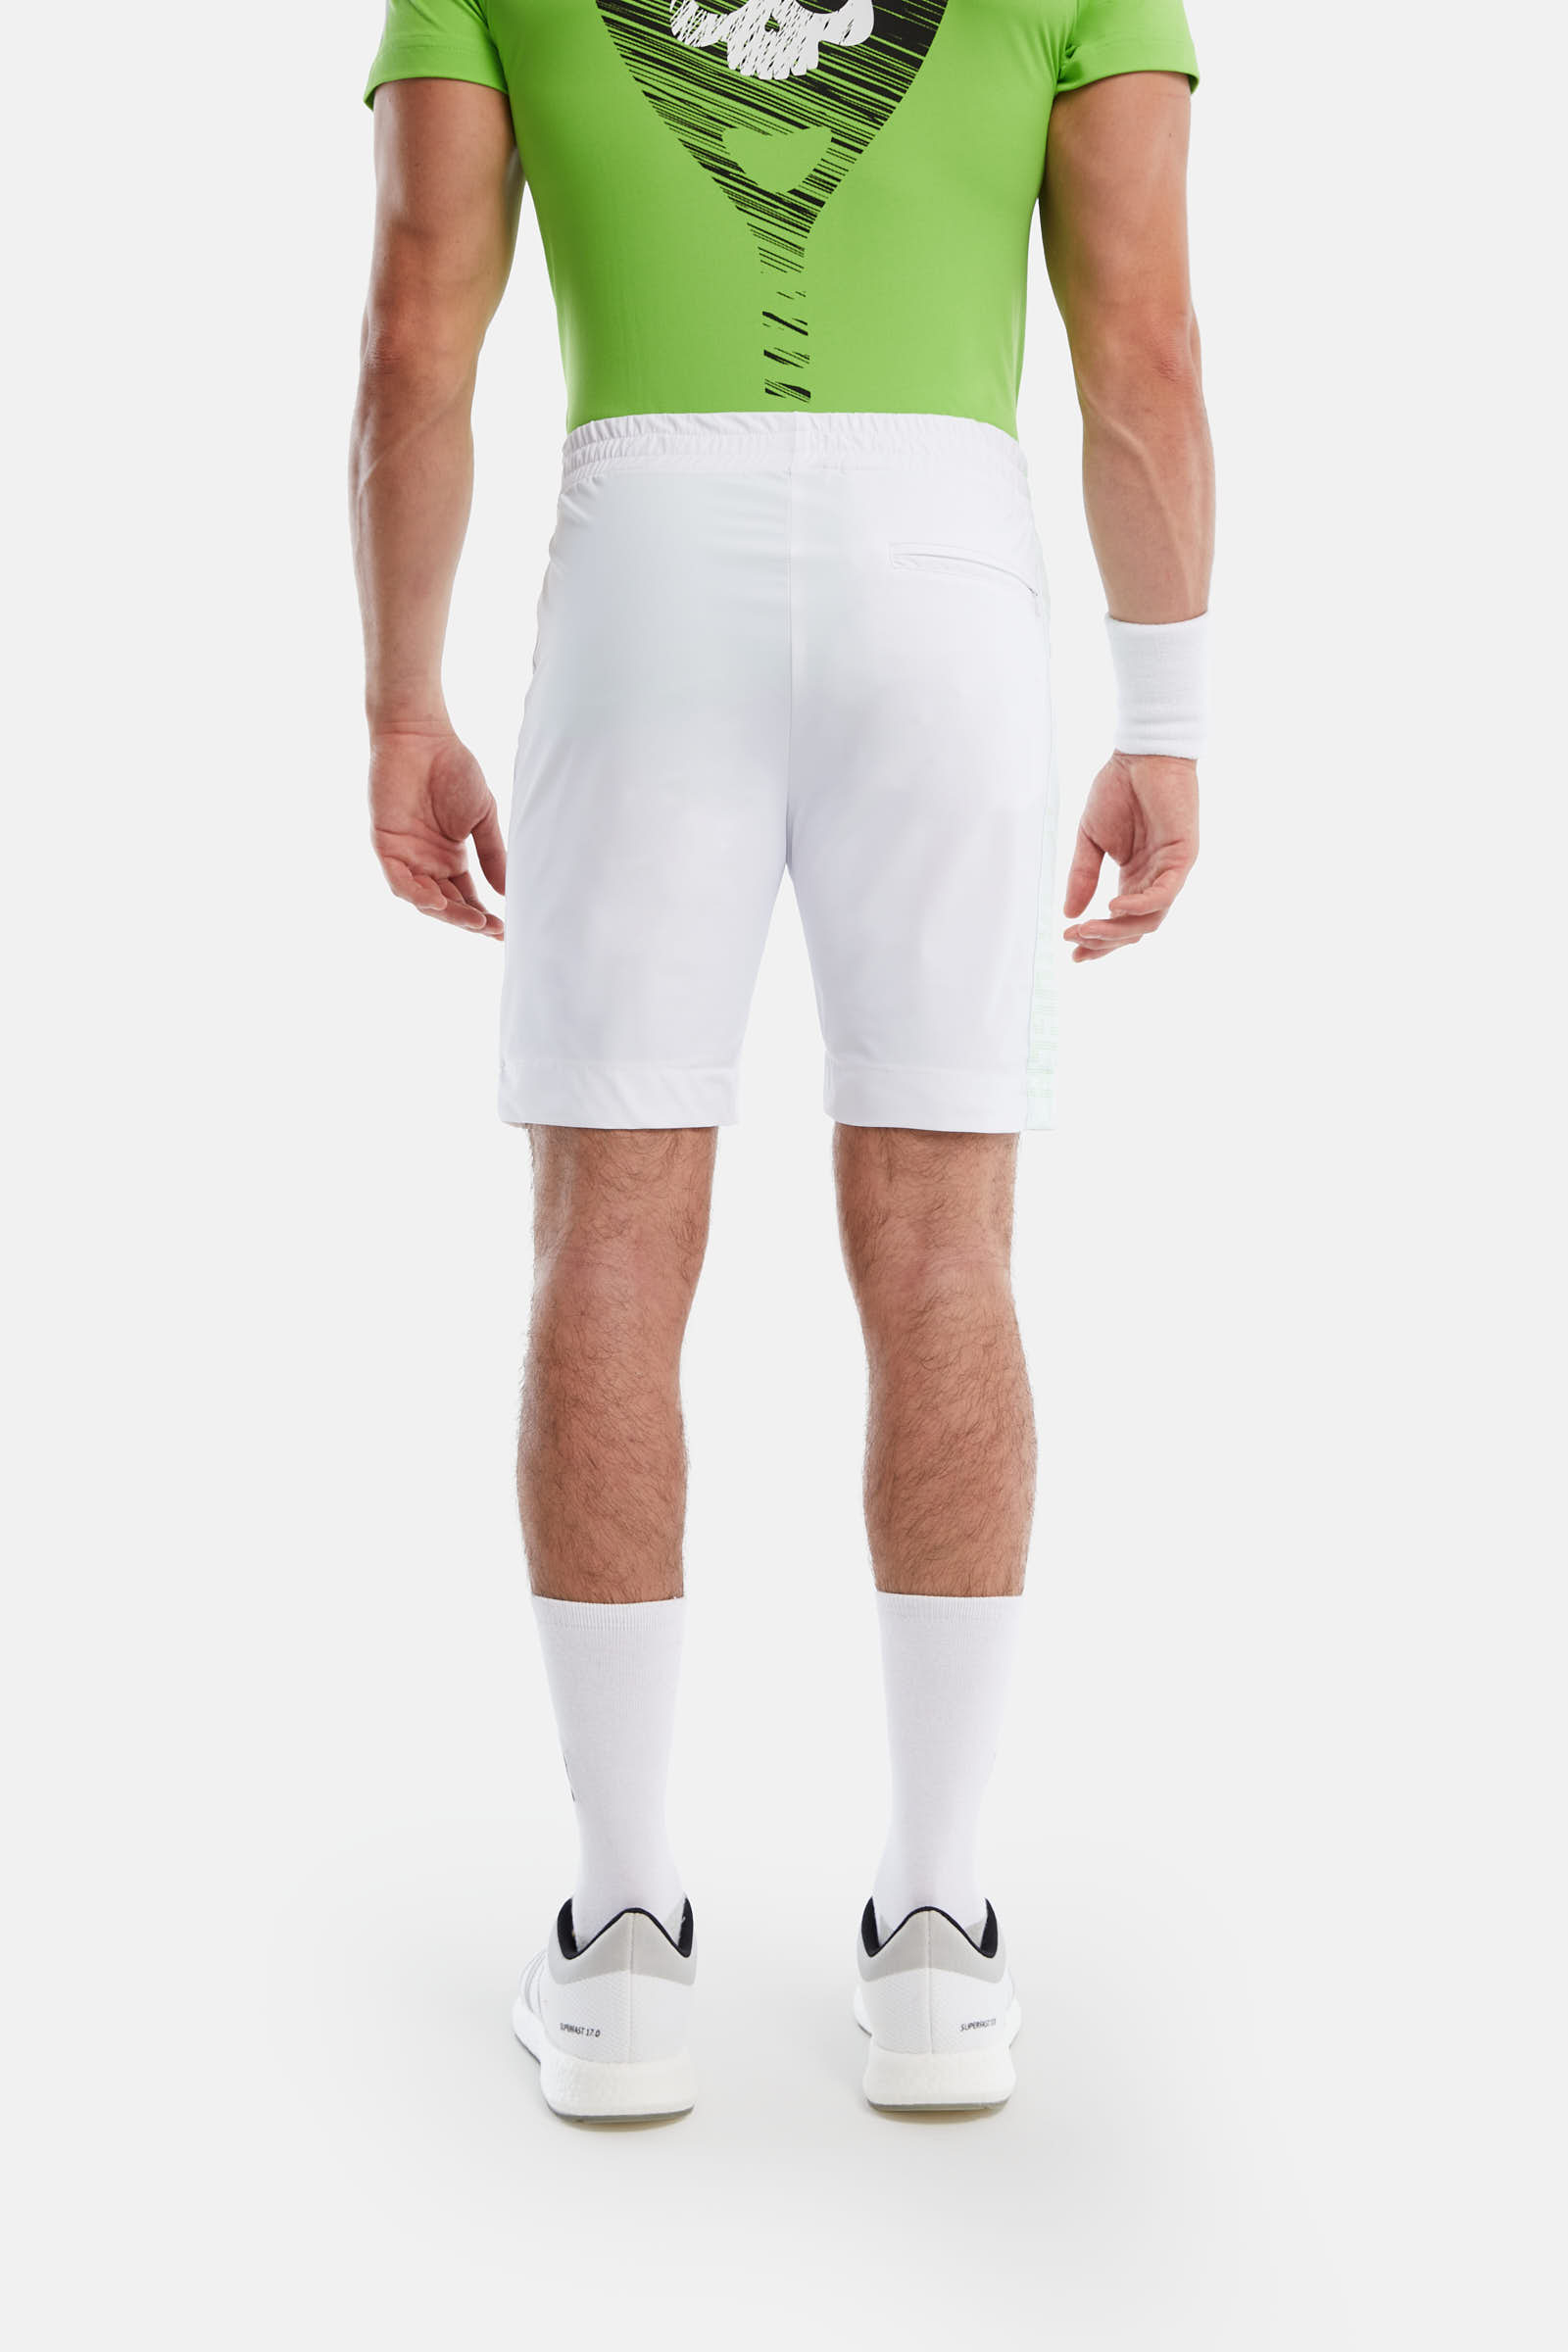 TECH MESH SHORTS SKULL - WHITE,GREEN - Hydrogen - Luxury Sportwear